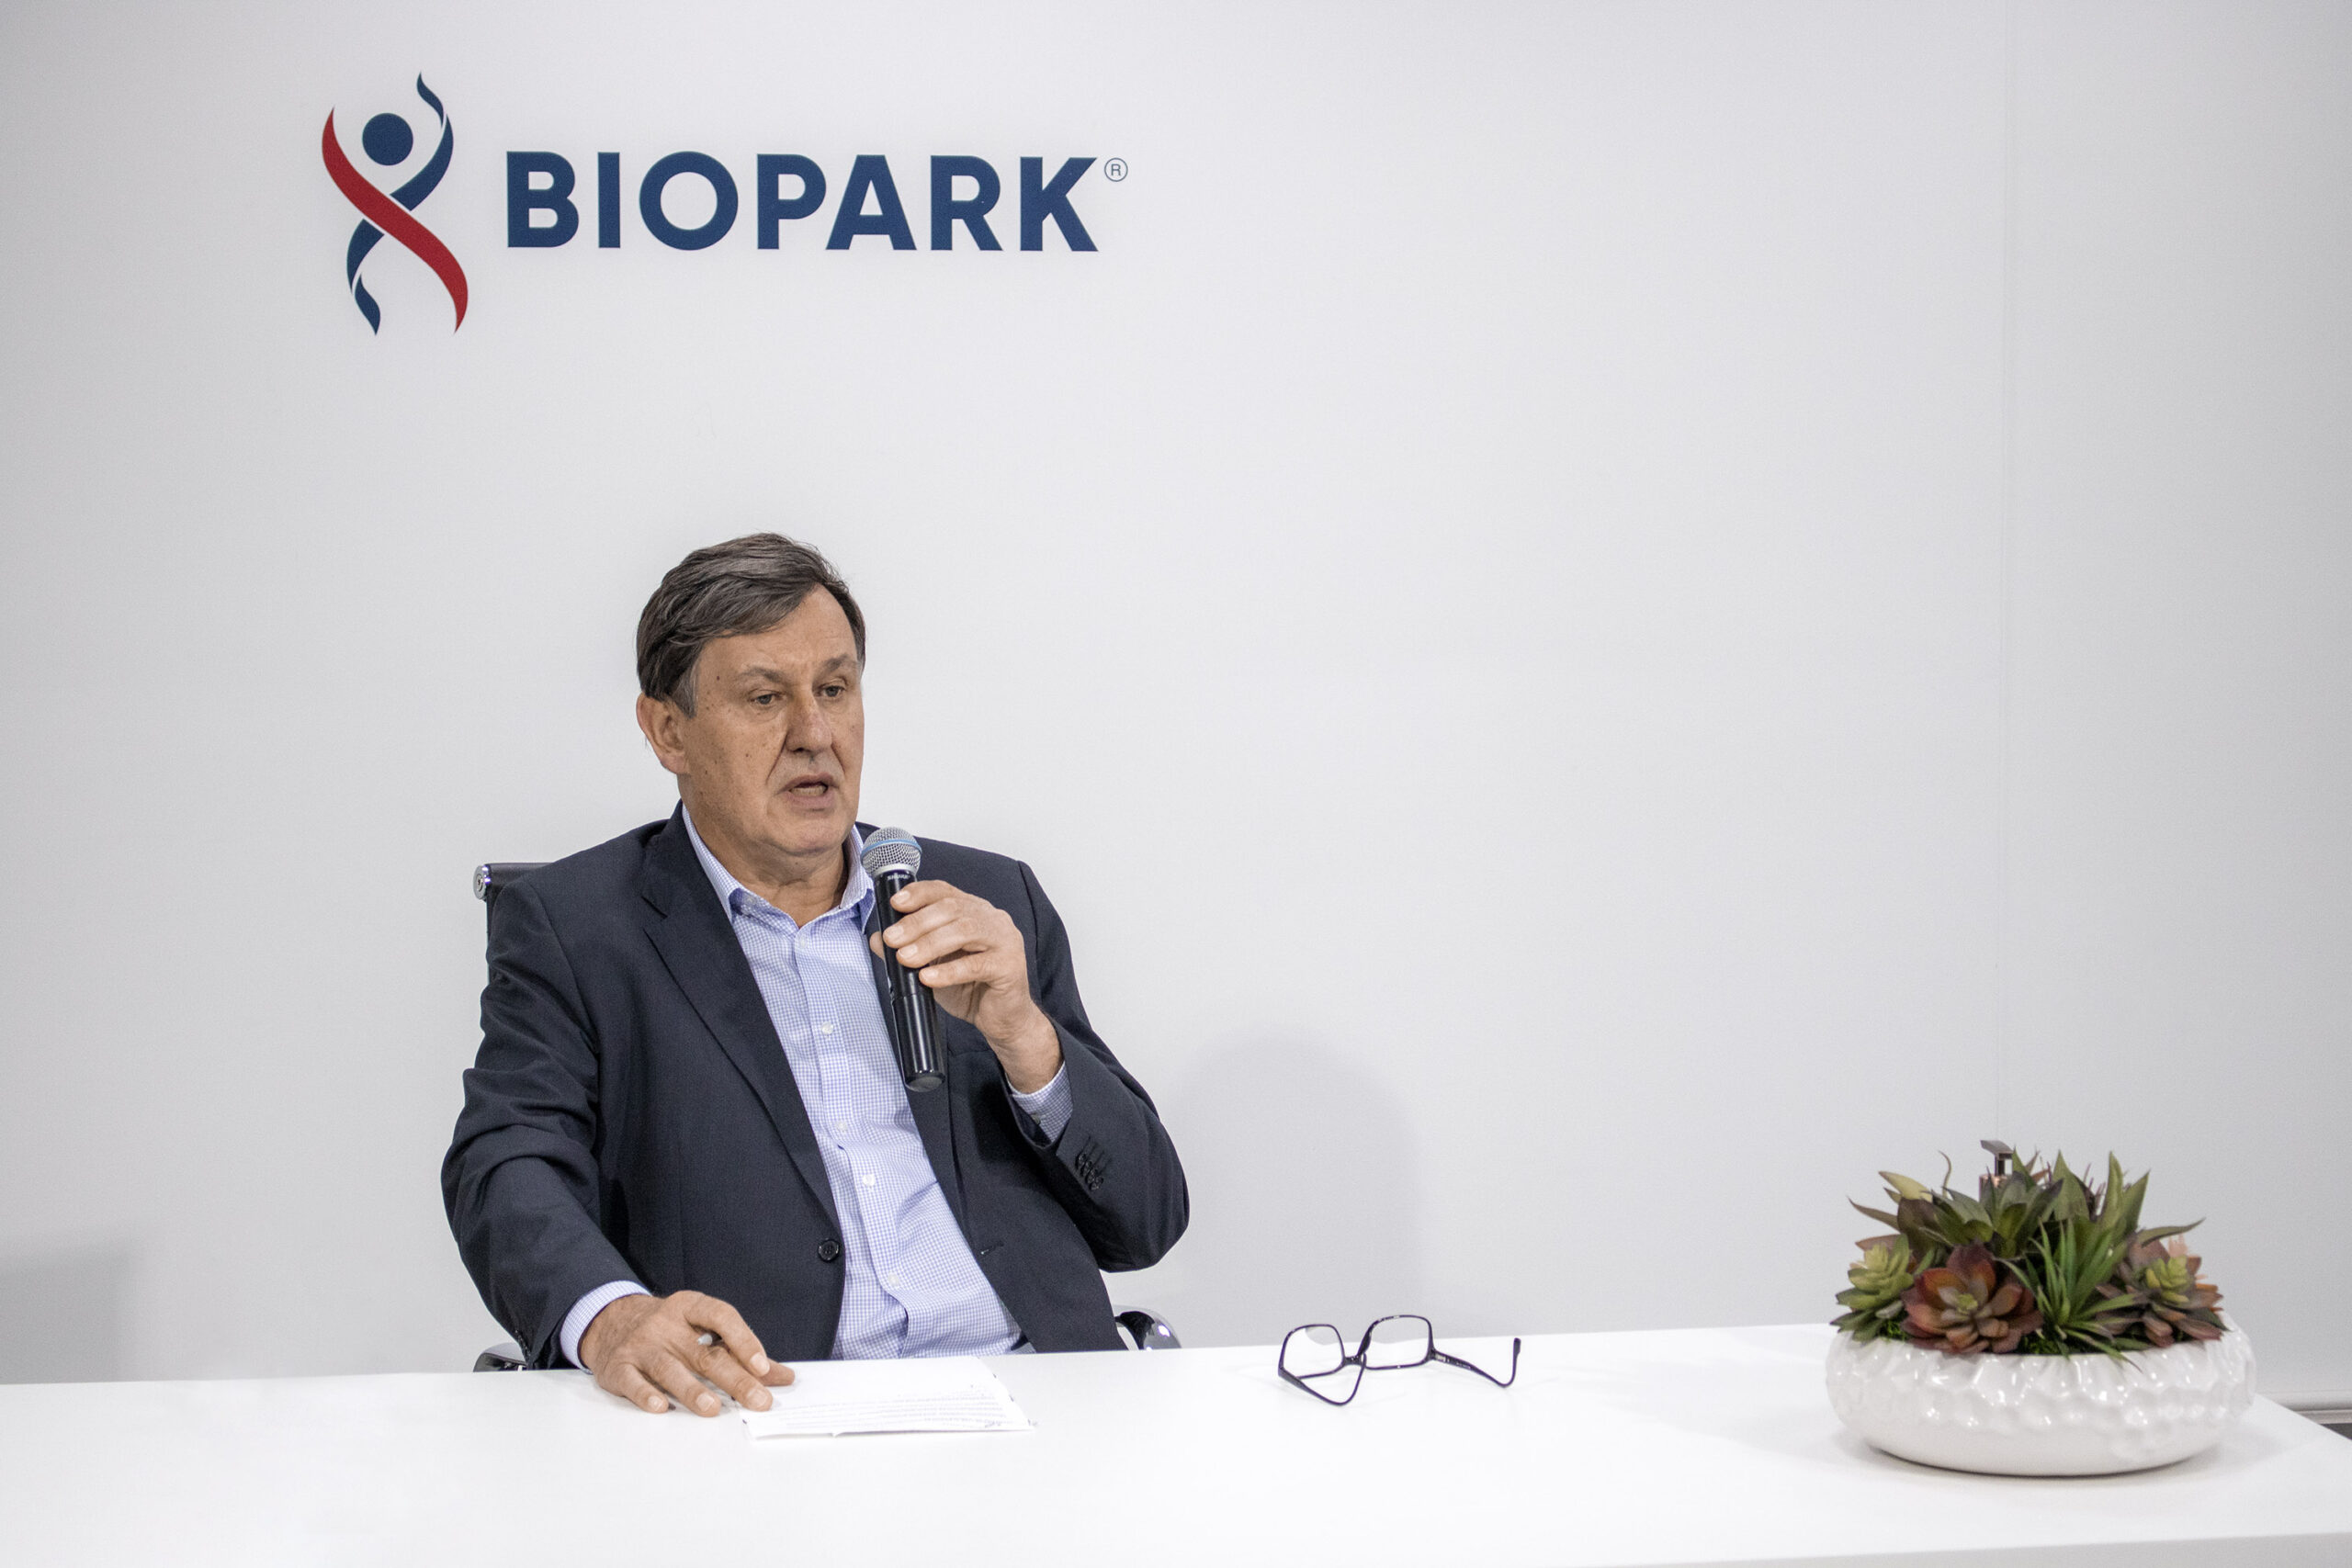  biopark-doa-area-para-construcao-de-complexo-universitario-utfpr 